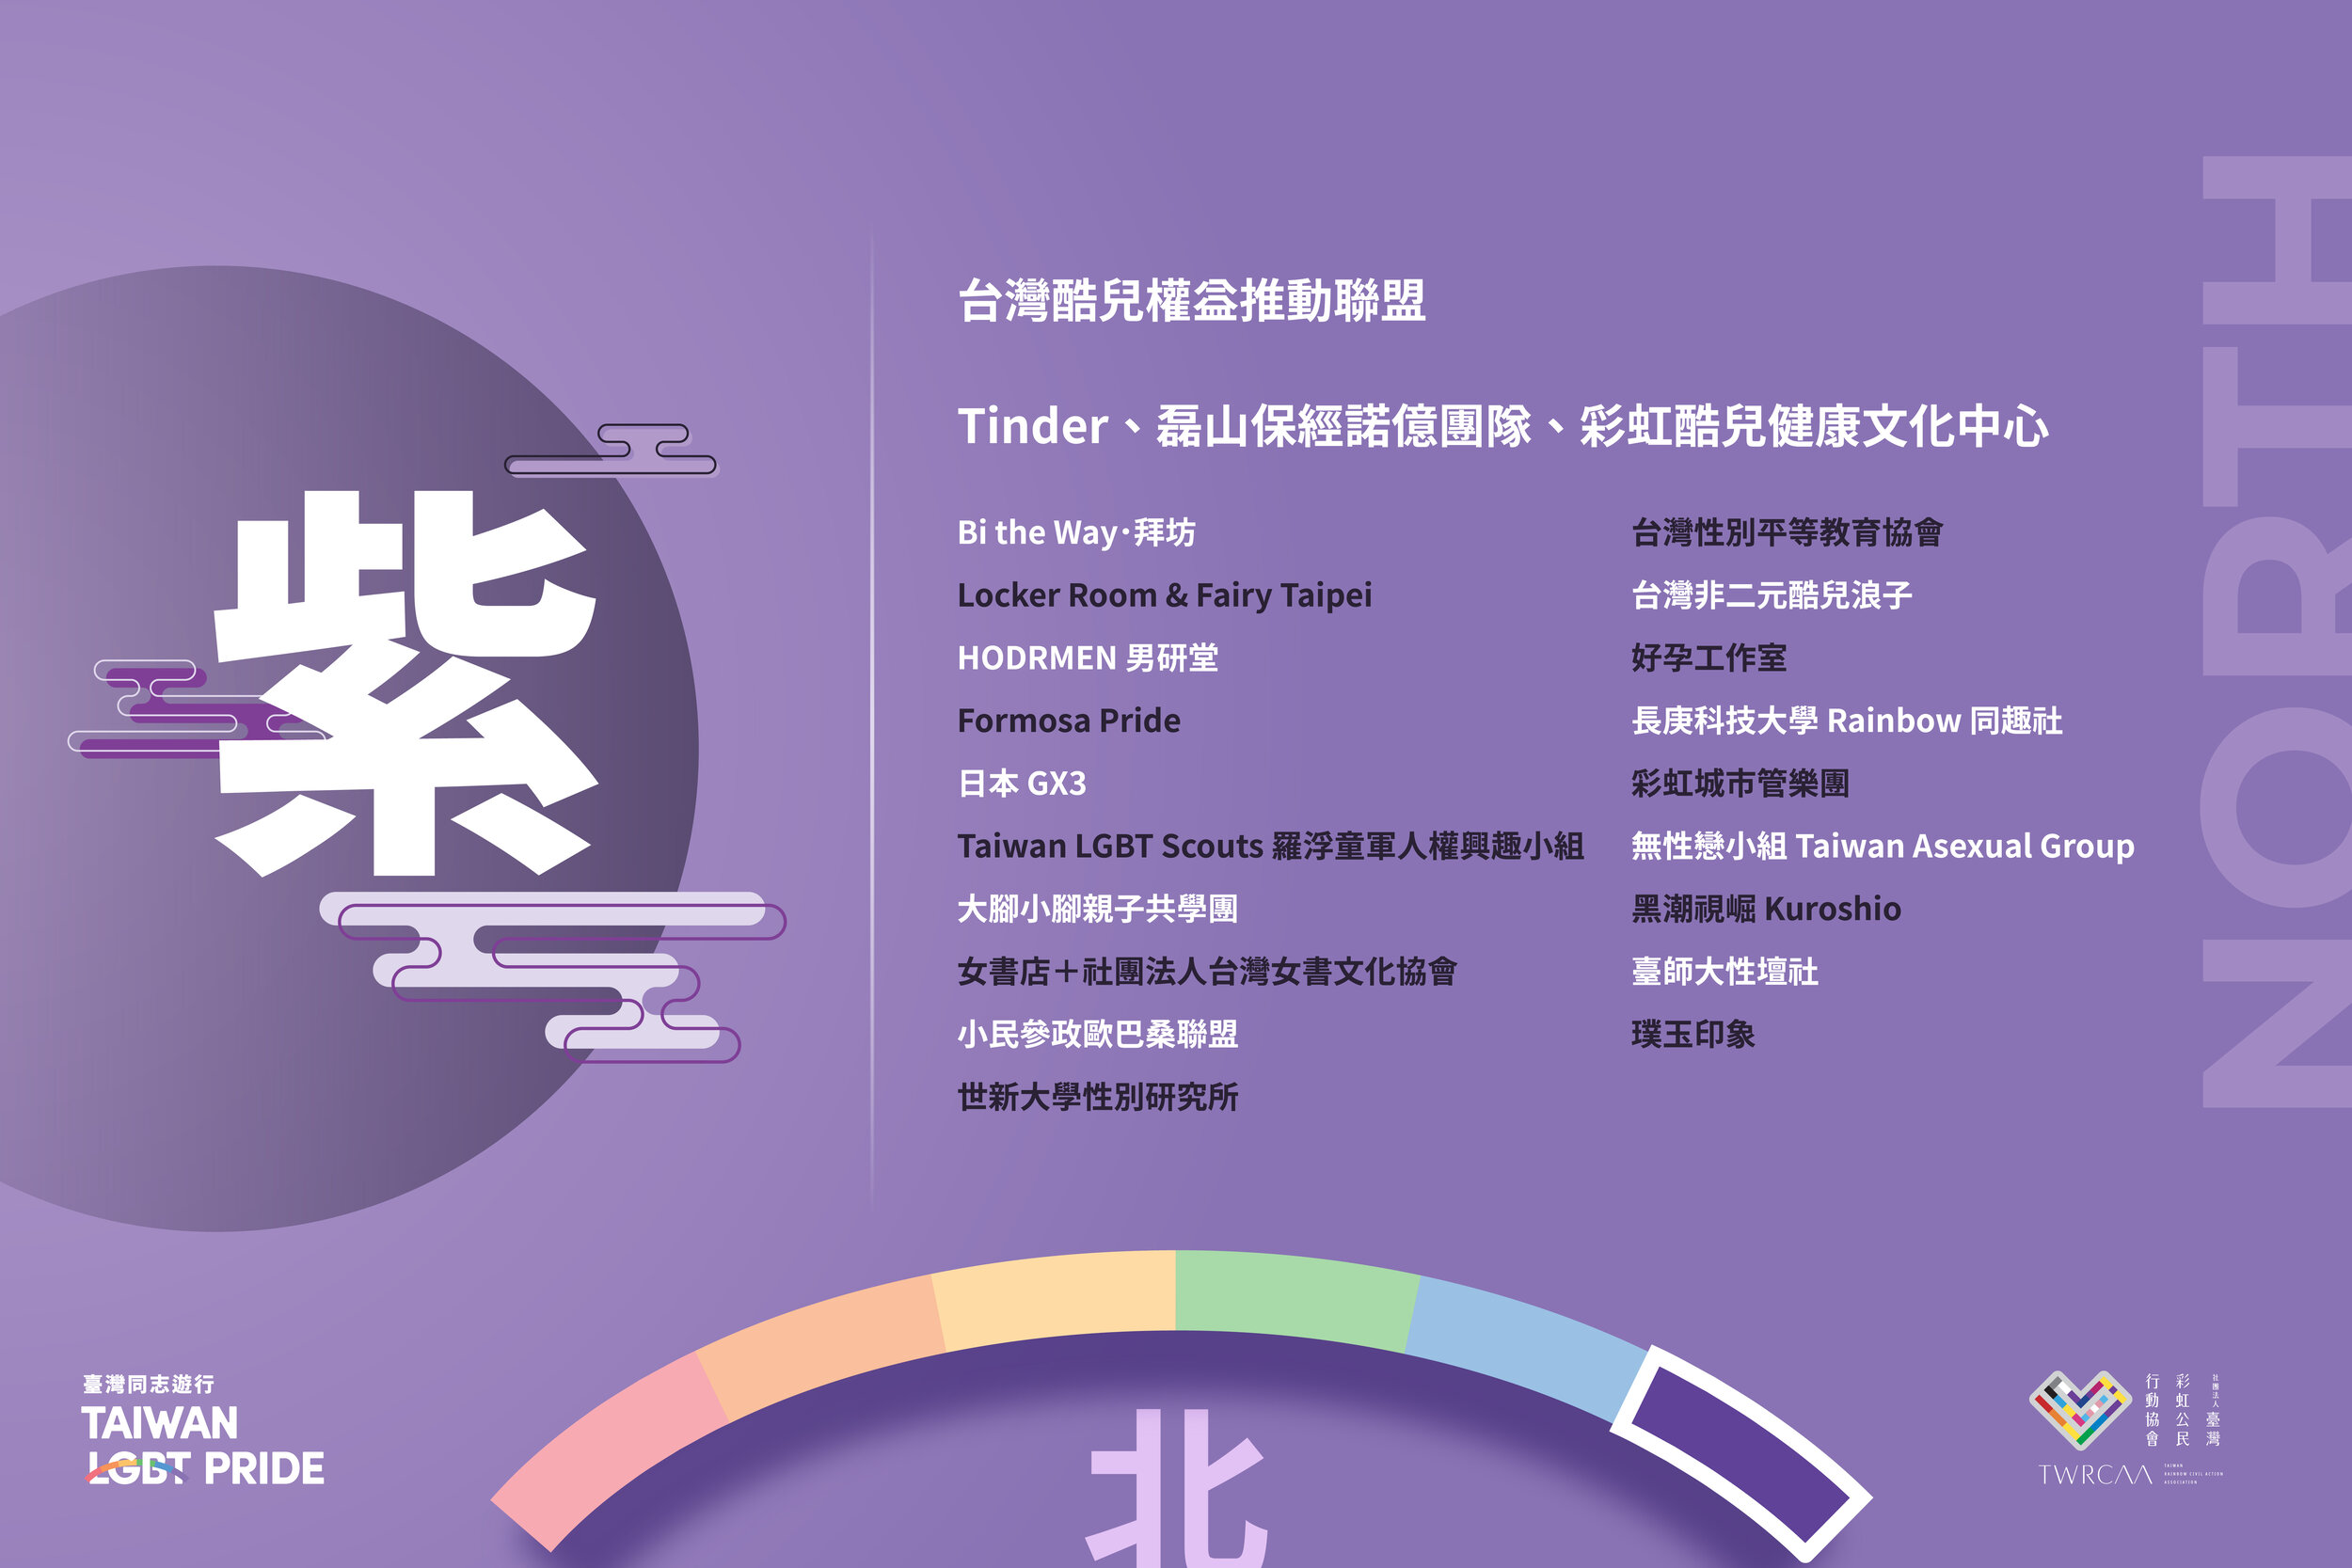 大隊車團體報名一覽表 第十九屆臺灣同志遊行官方網站 21 Taiwan Lgbt Pride Official Site